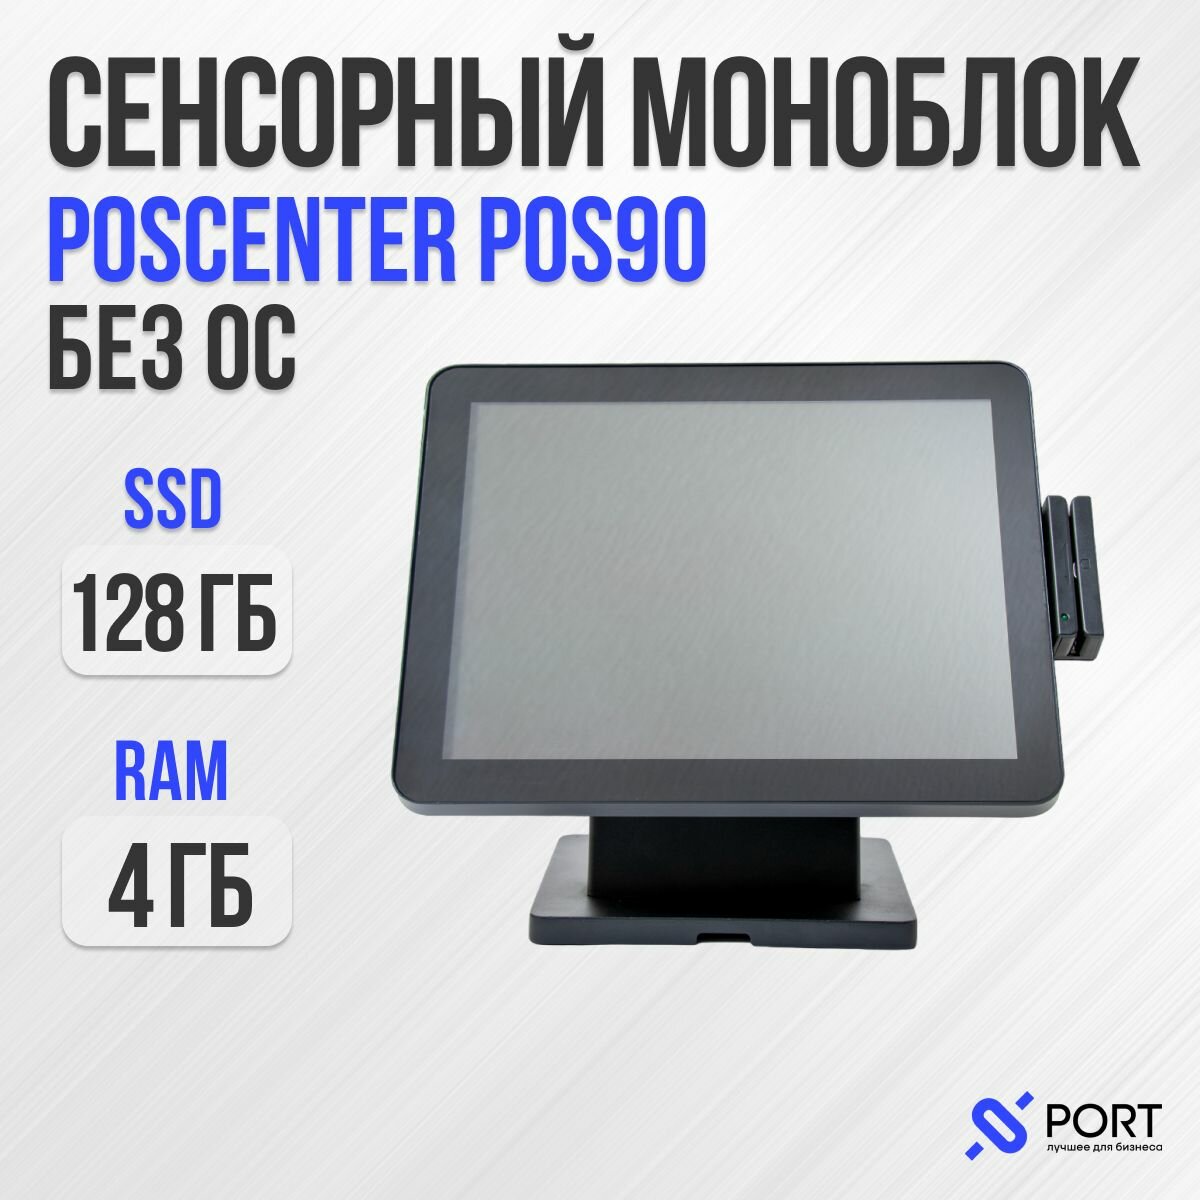 Pos моноблок poscenter POS 90, Сенсорный, Без ОС, SSD 128 gb